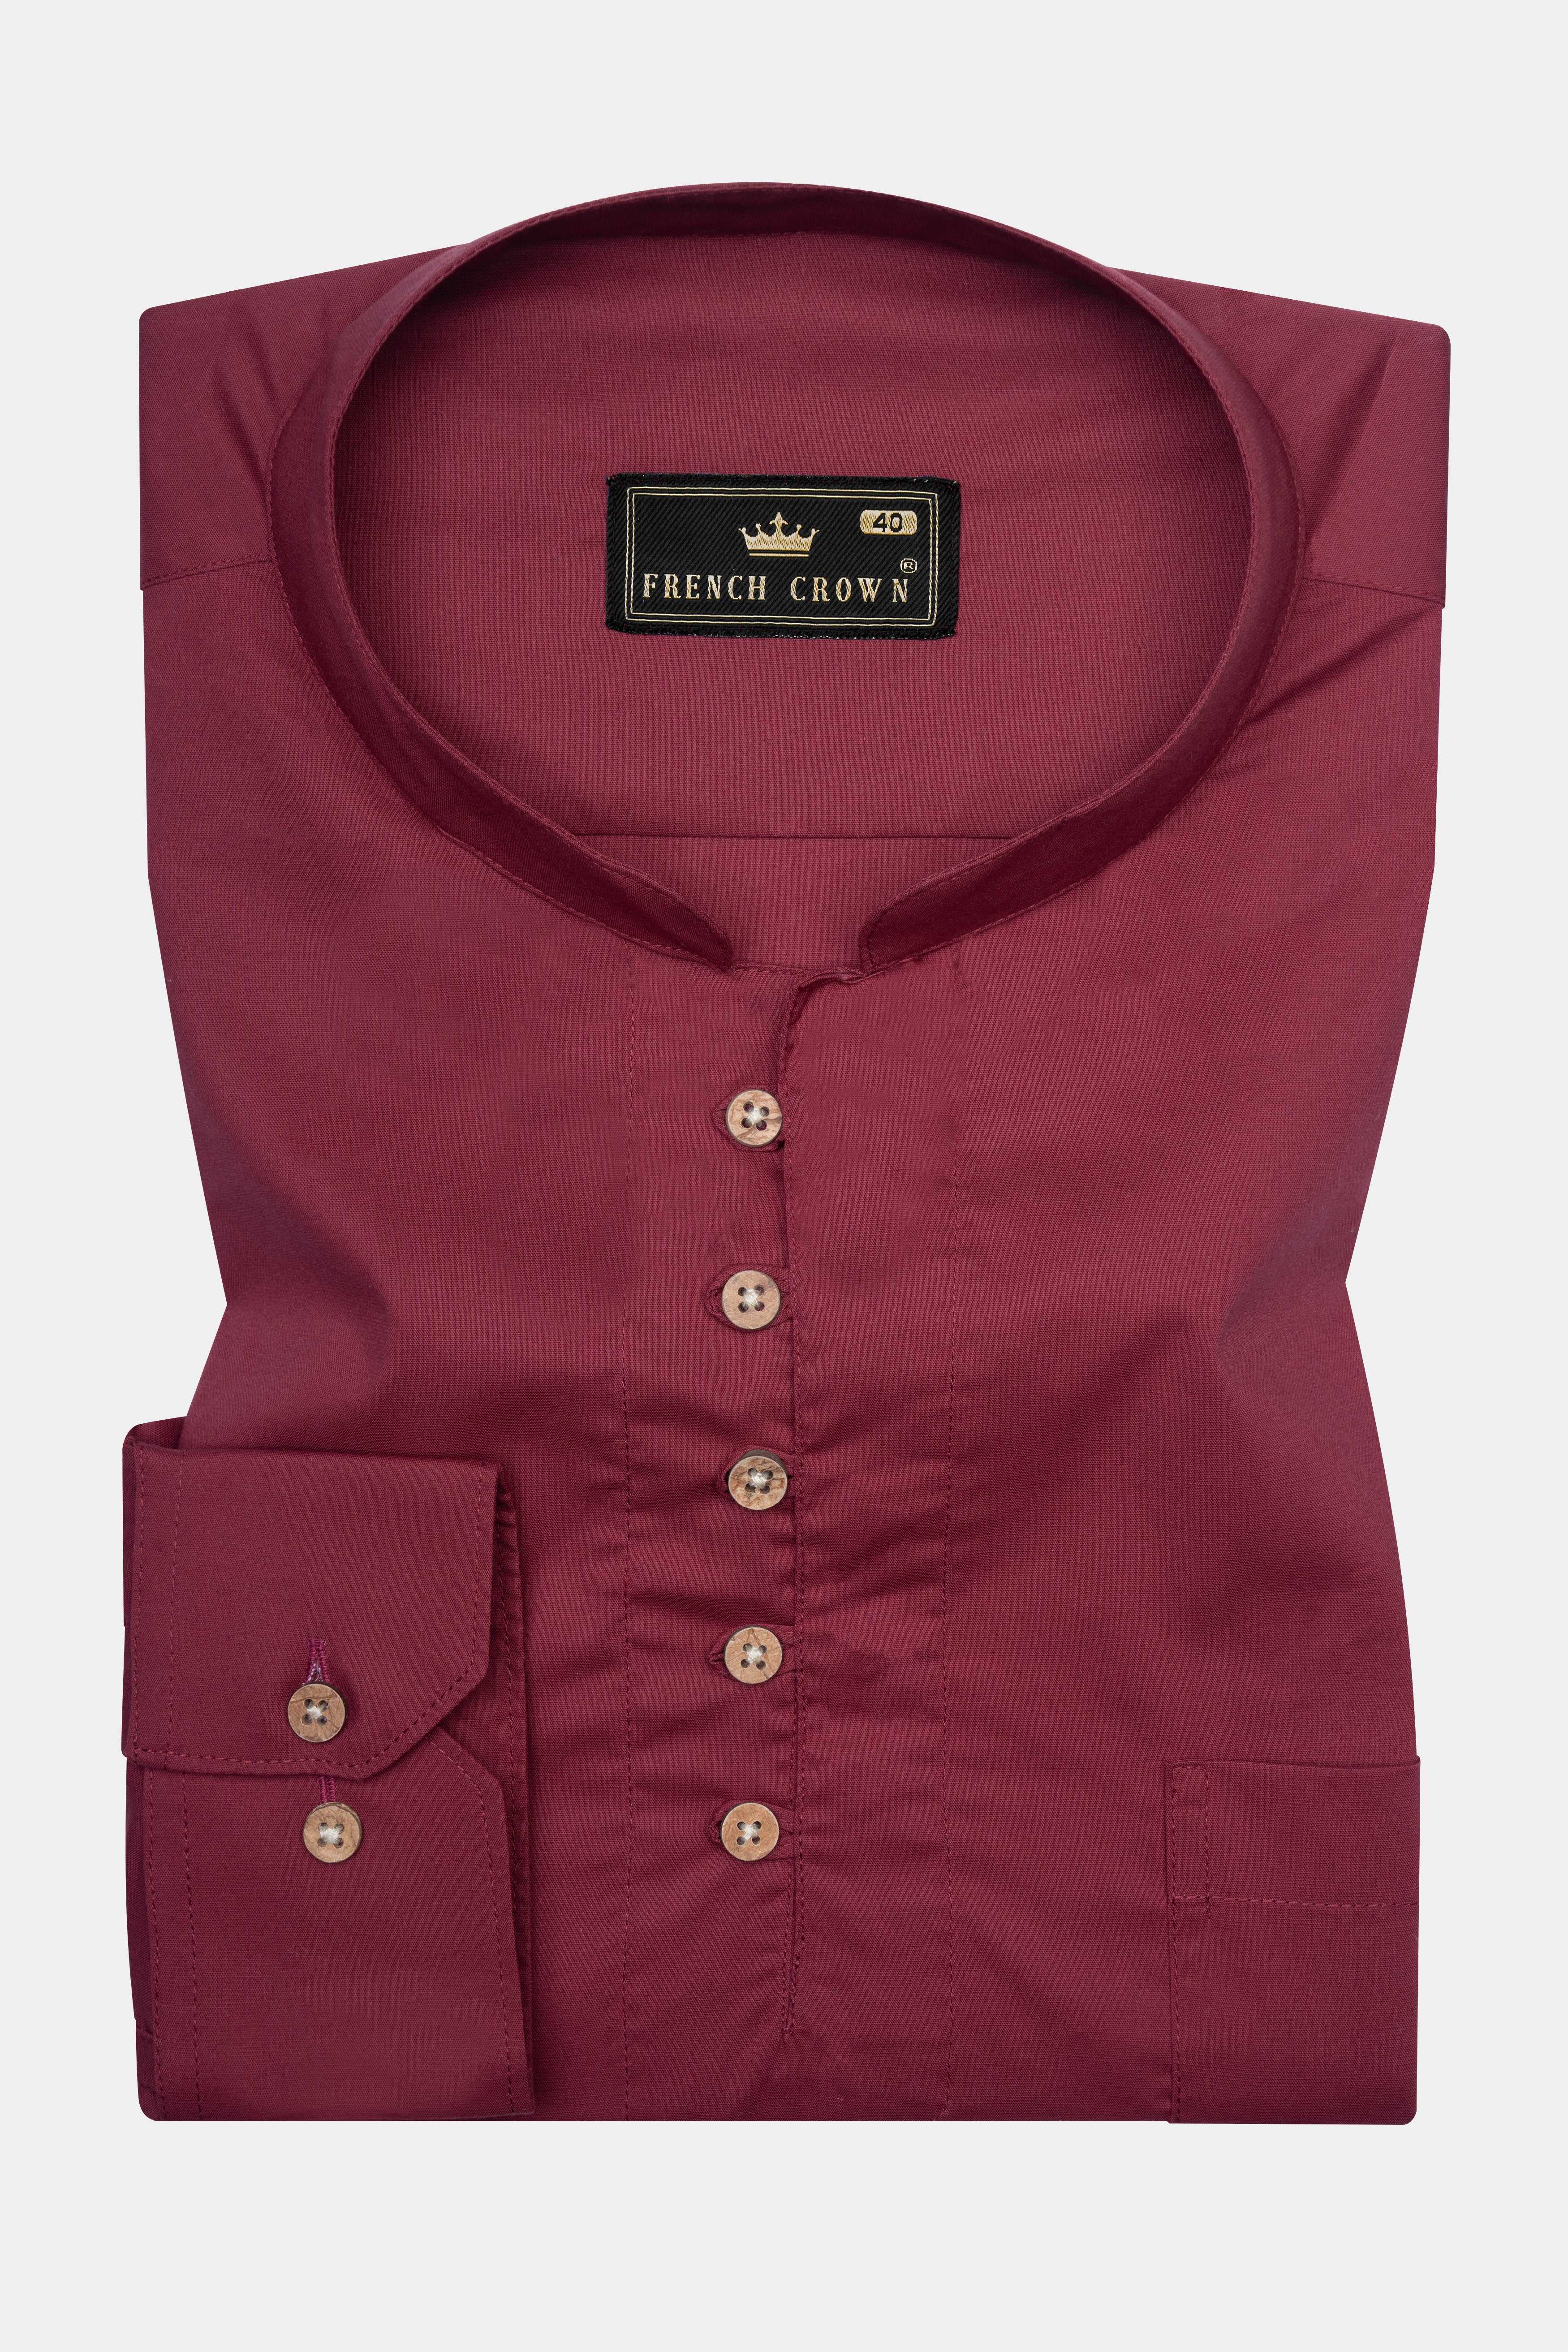 Wine Berry Brown Super Soft Premium Cotton Kurta Shirt